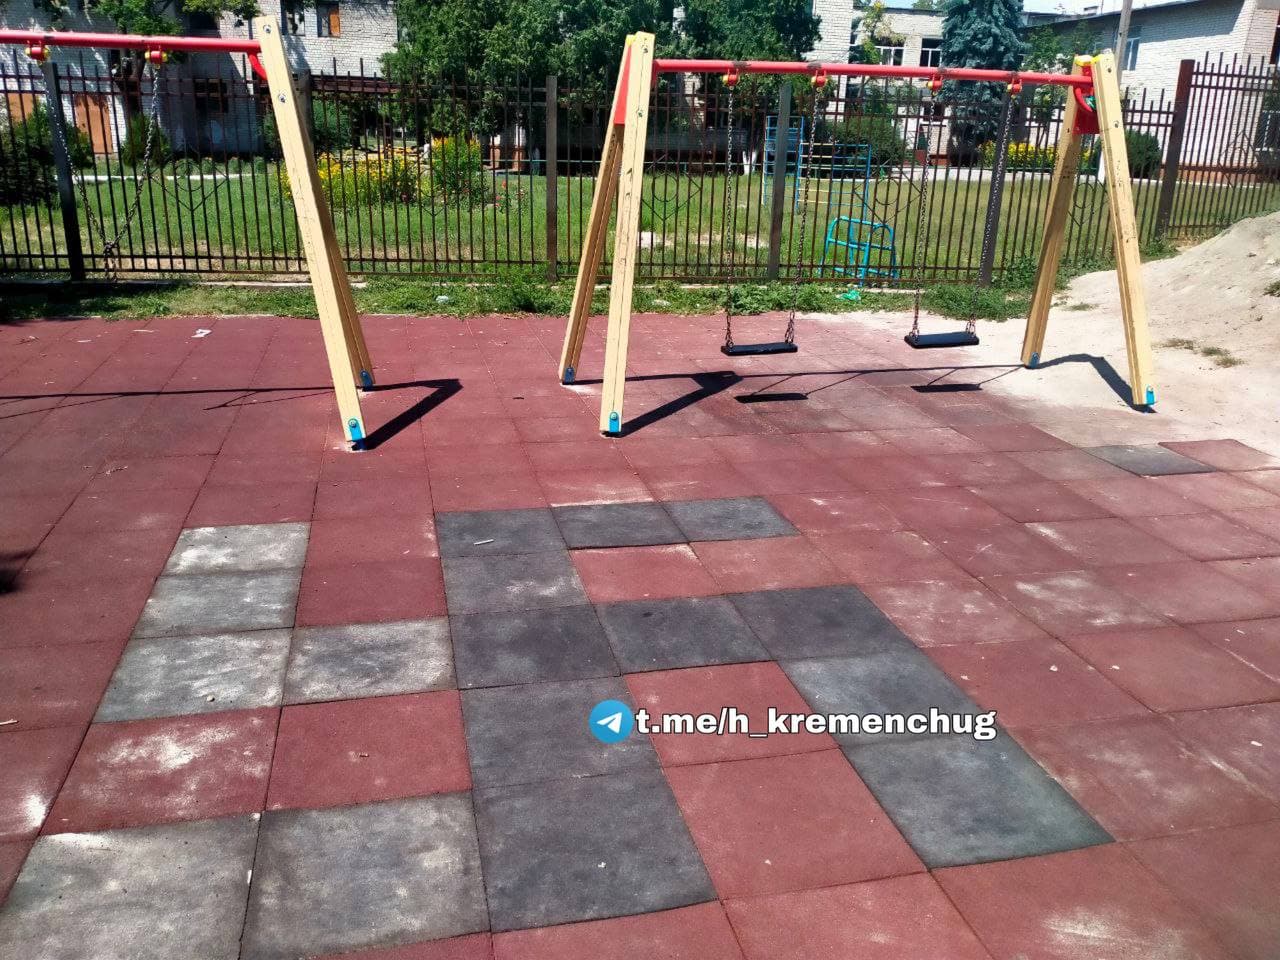 В Кременчуге на детской площадке появилась свастика - ZN.ua